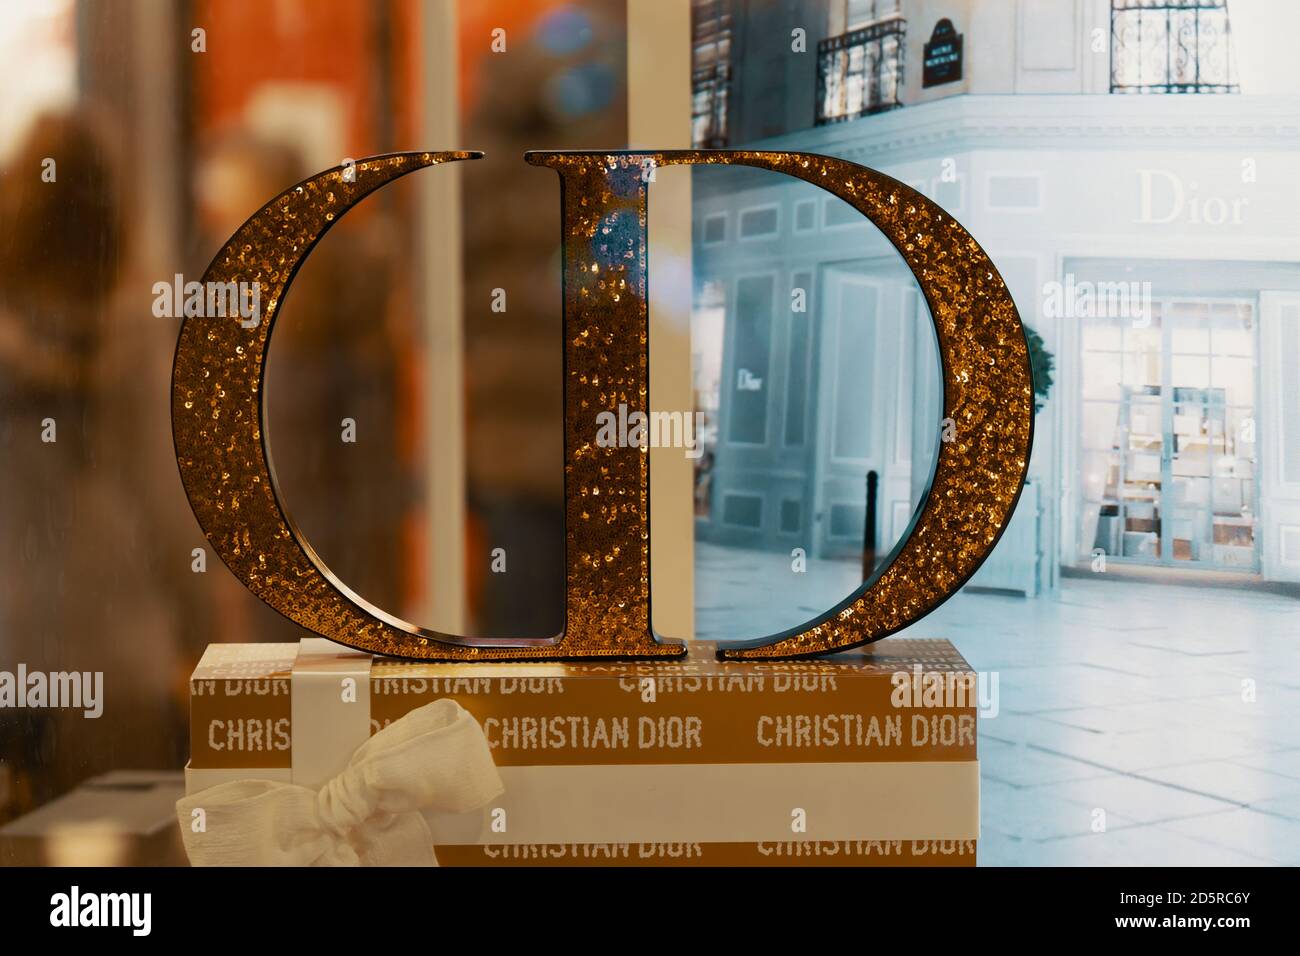 Le français Christian Dior de biens de luxe tels les vêtements et produits  de beauté magasin de marque est vu à Hong Kong Photo Stock  Alamy